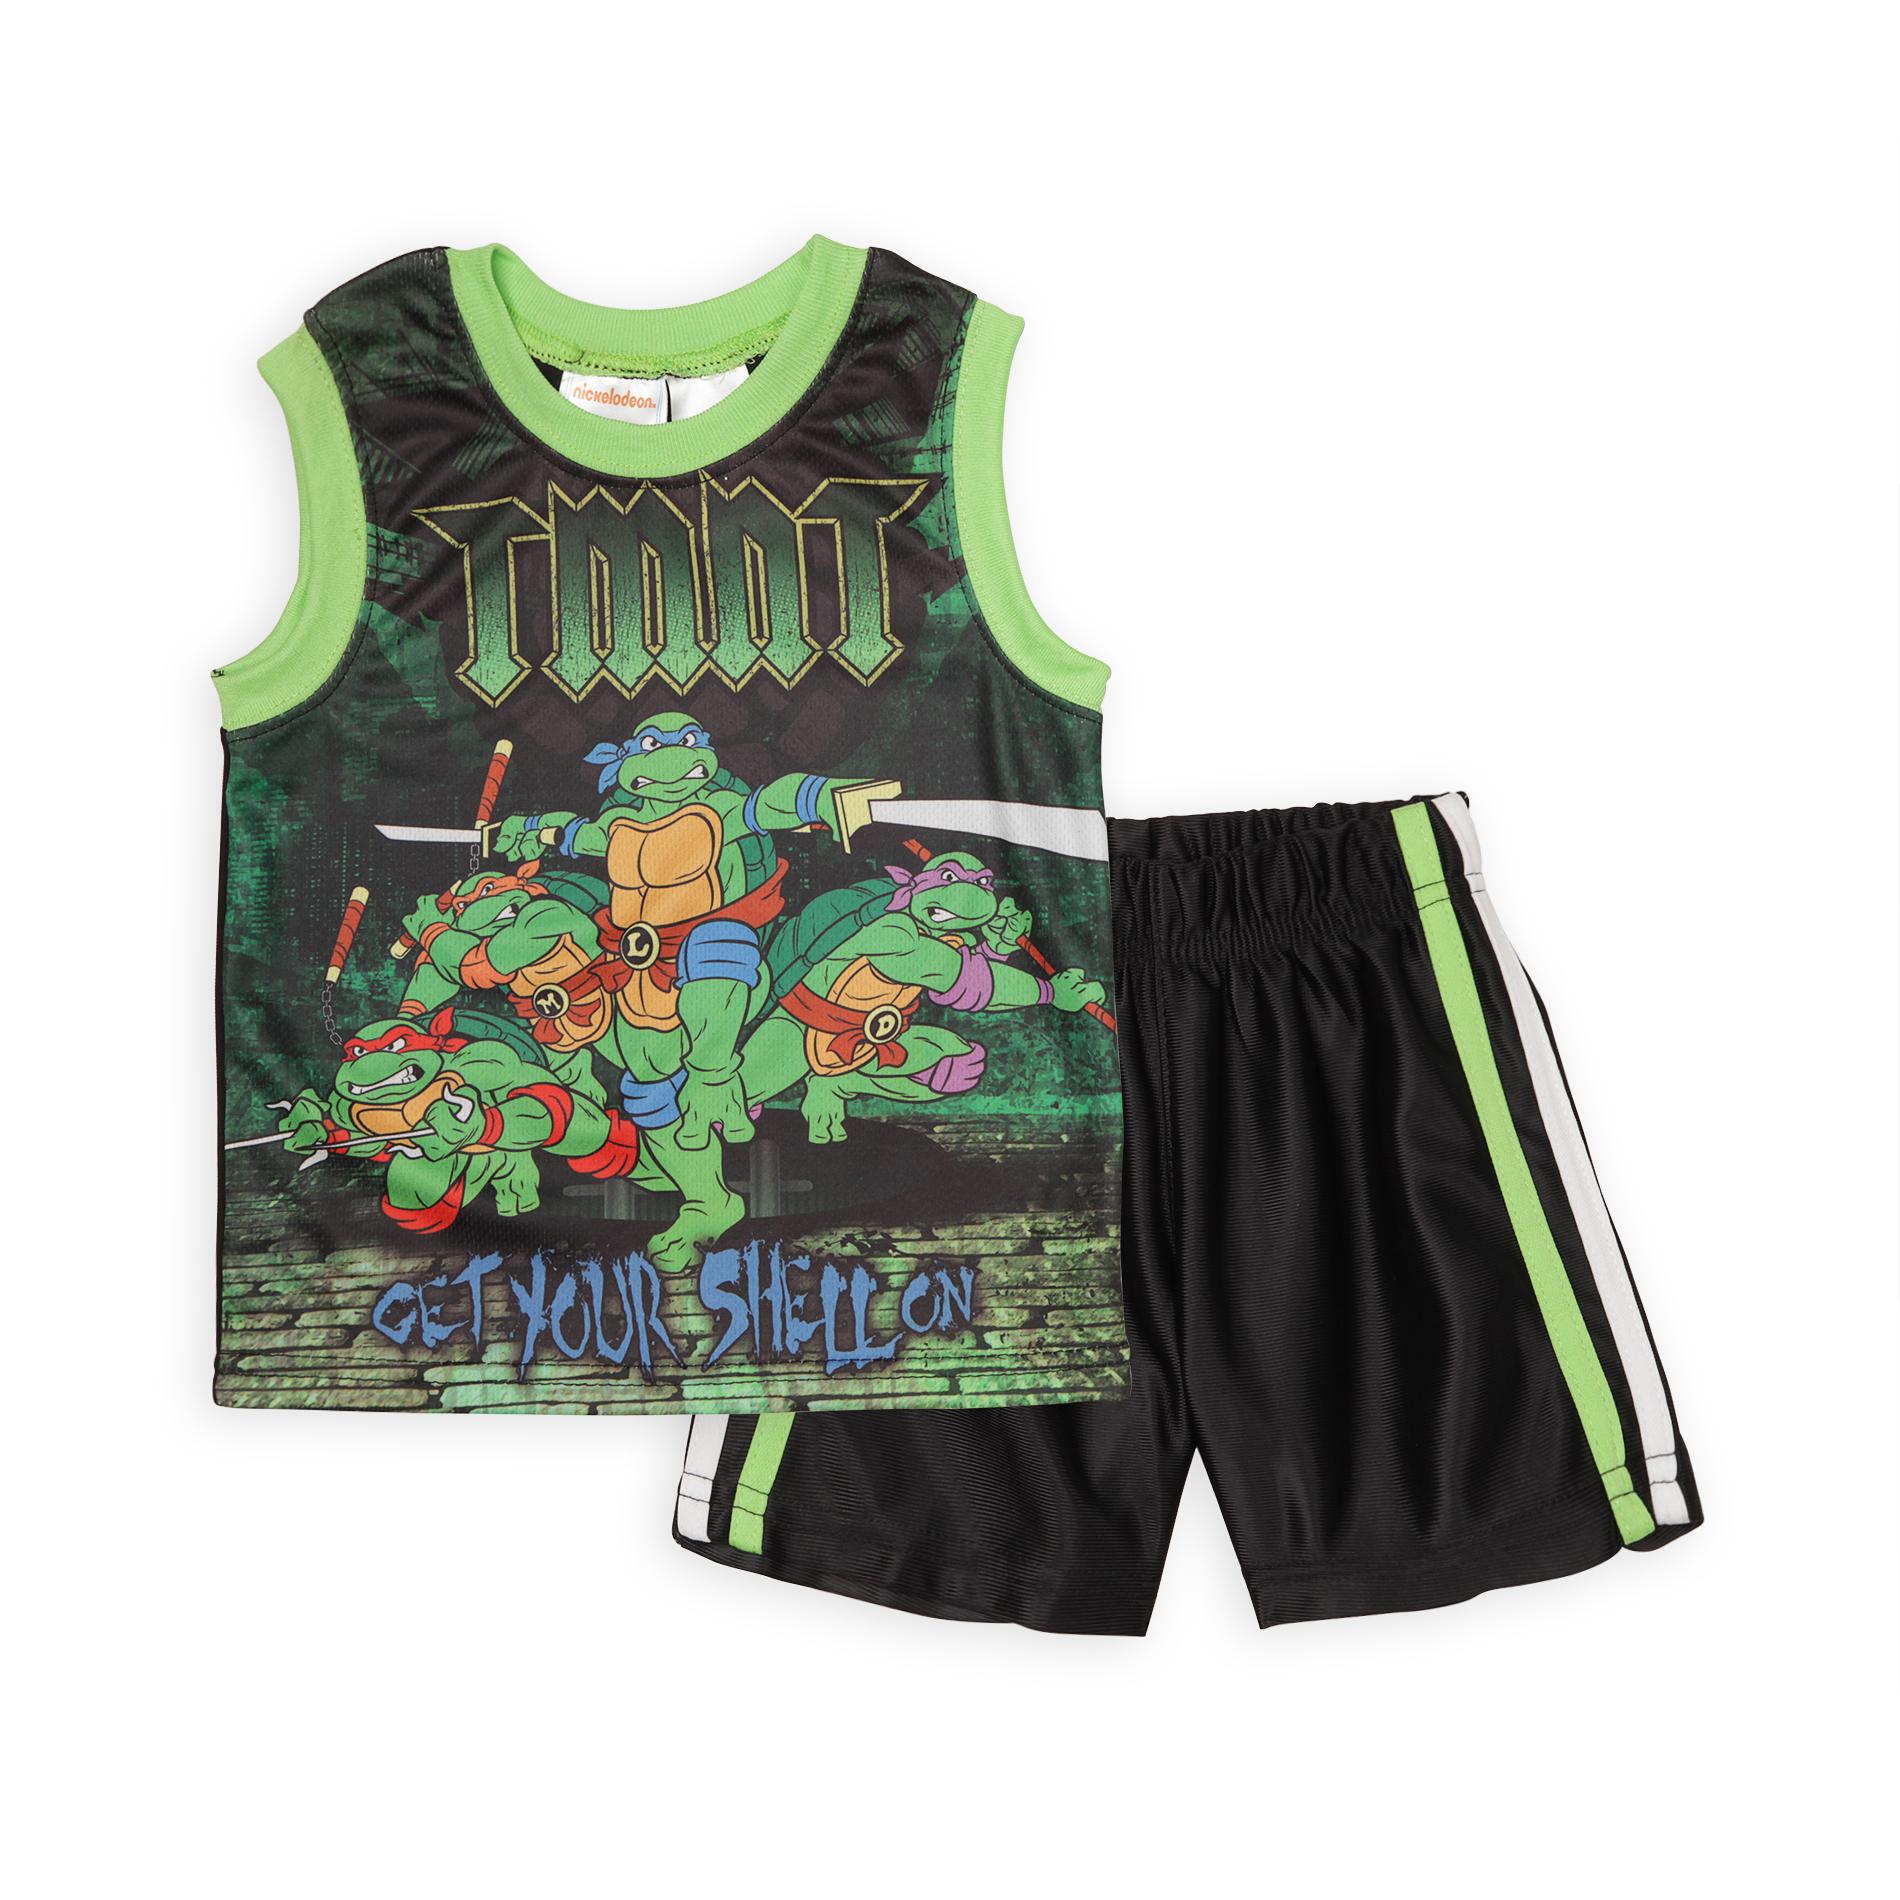 Nickelodeon Toddler Boy's Tank Top & Shorts - Teenage Mutant Ninja Turtles